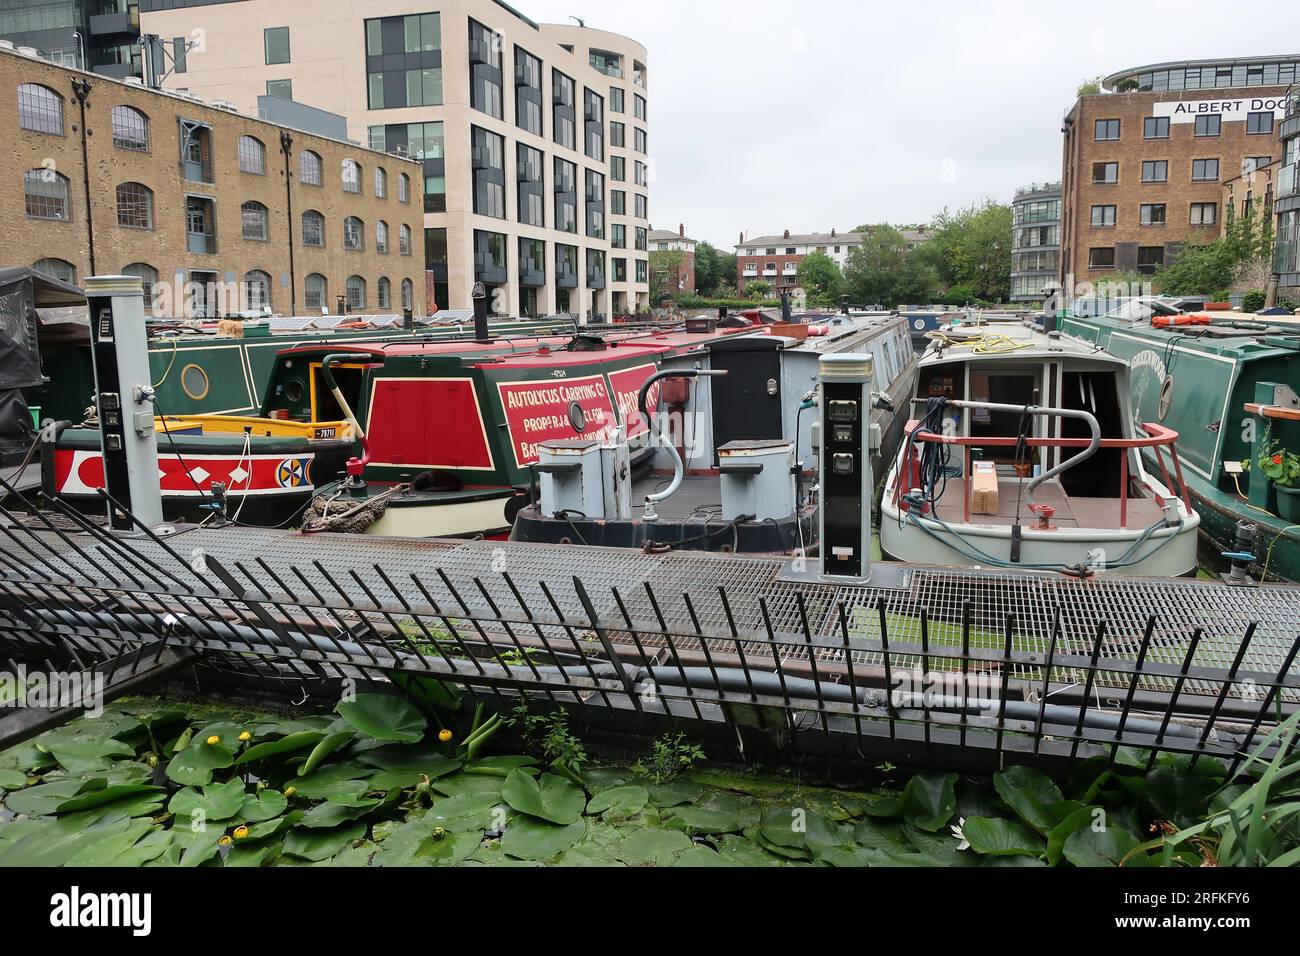 Leben auf dem Wasser: Schmalboote, die am Battlebridge Basin am Regent's Canal neben Londoner Wohnungen und dem ehemaligen Albert Dock ankerten. Stockfoto